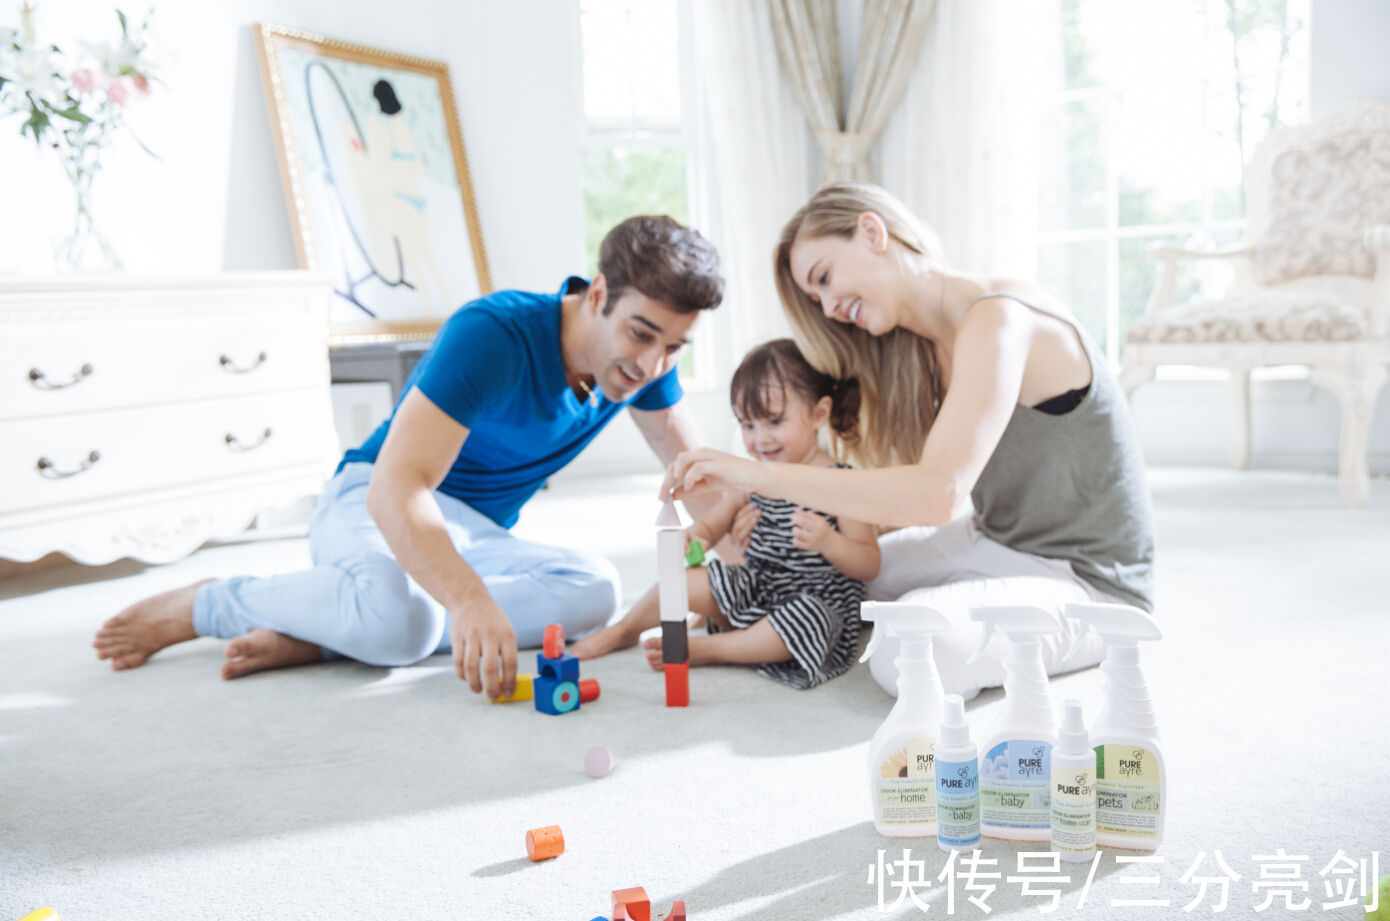 父母|欧美当父母相当轻松，中国父母为啥那么累？两者区别究竟在哪里？